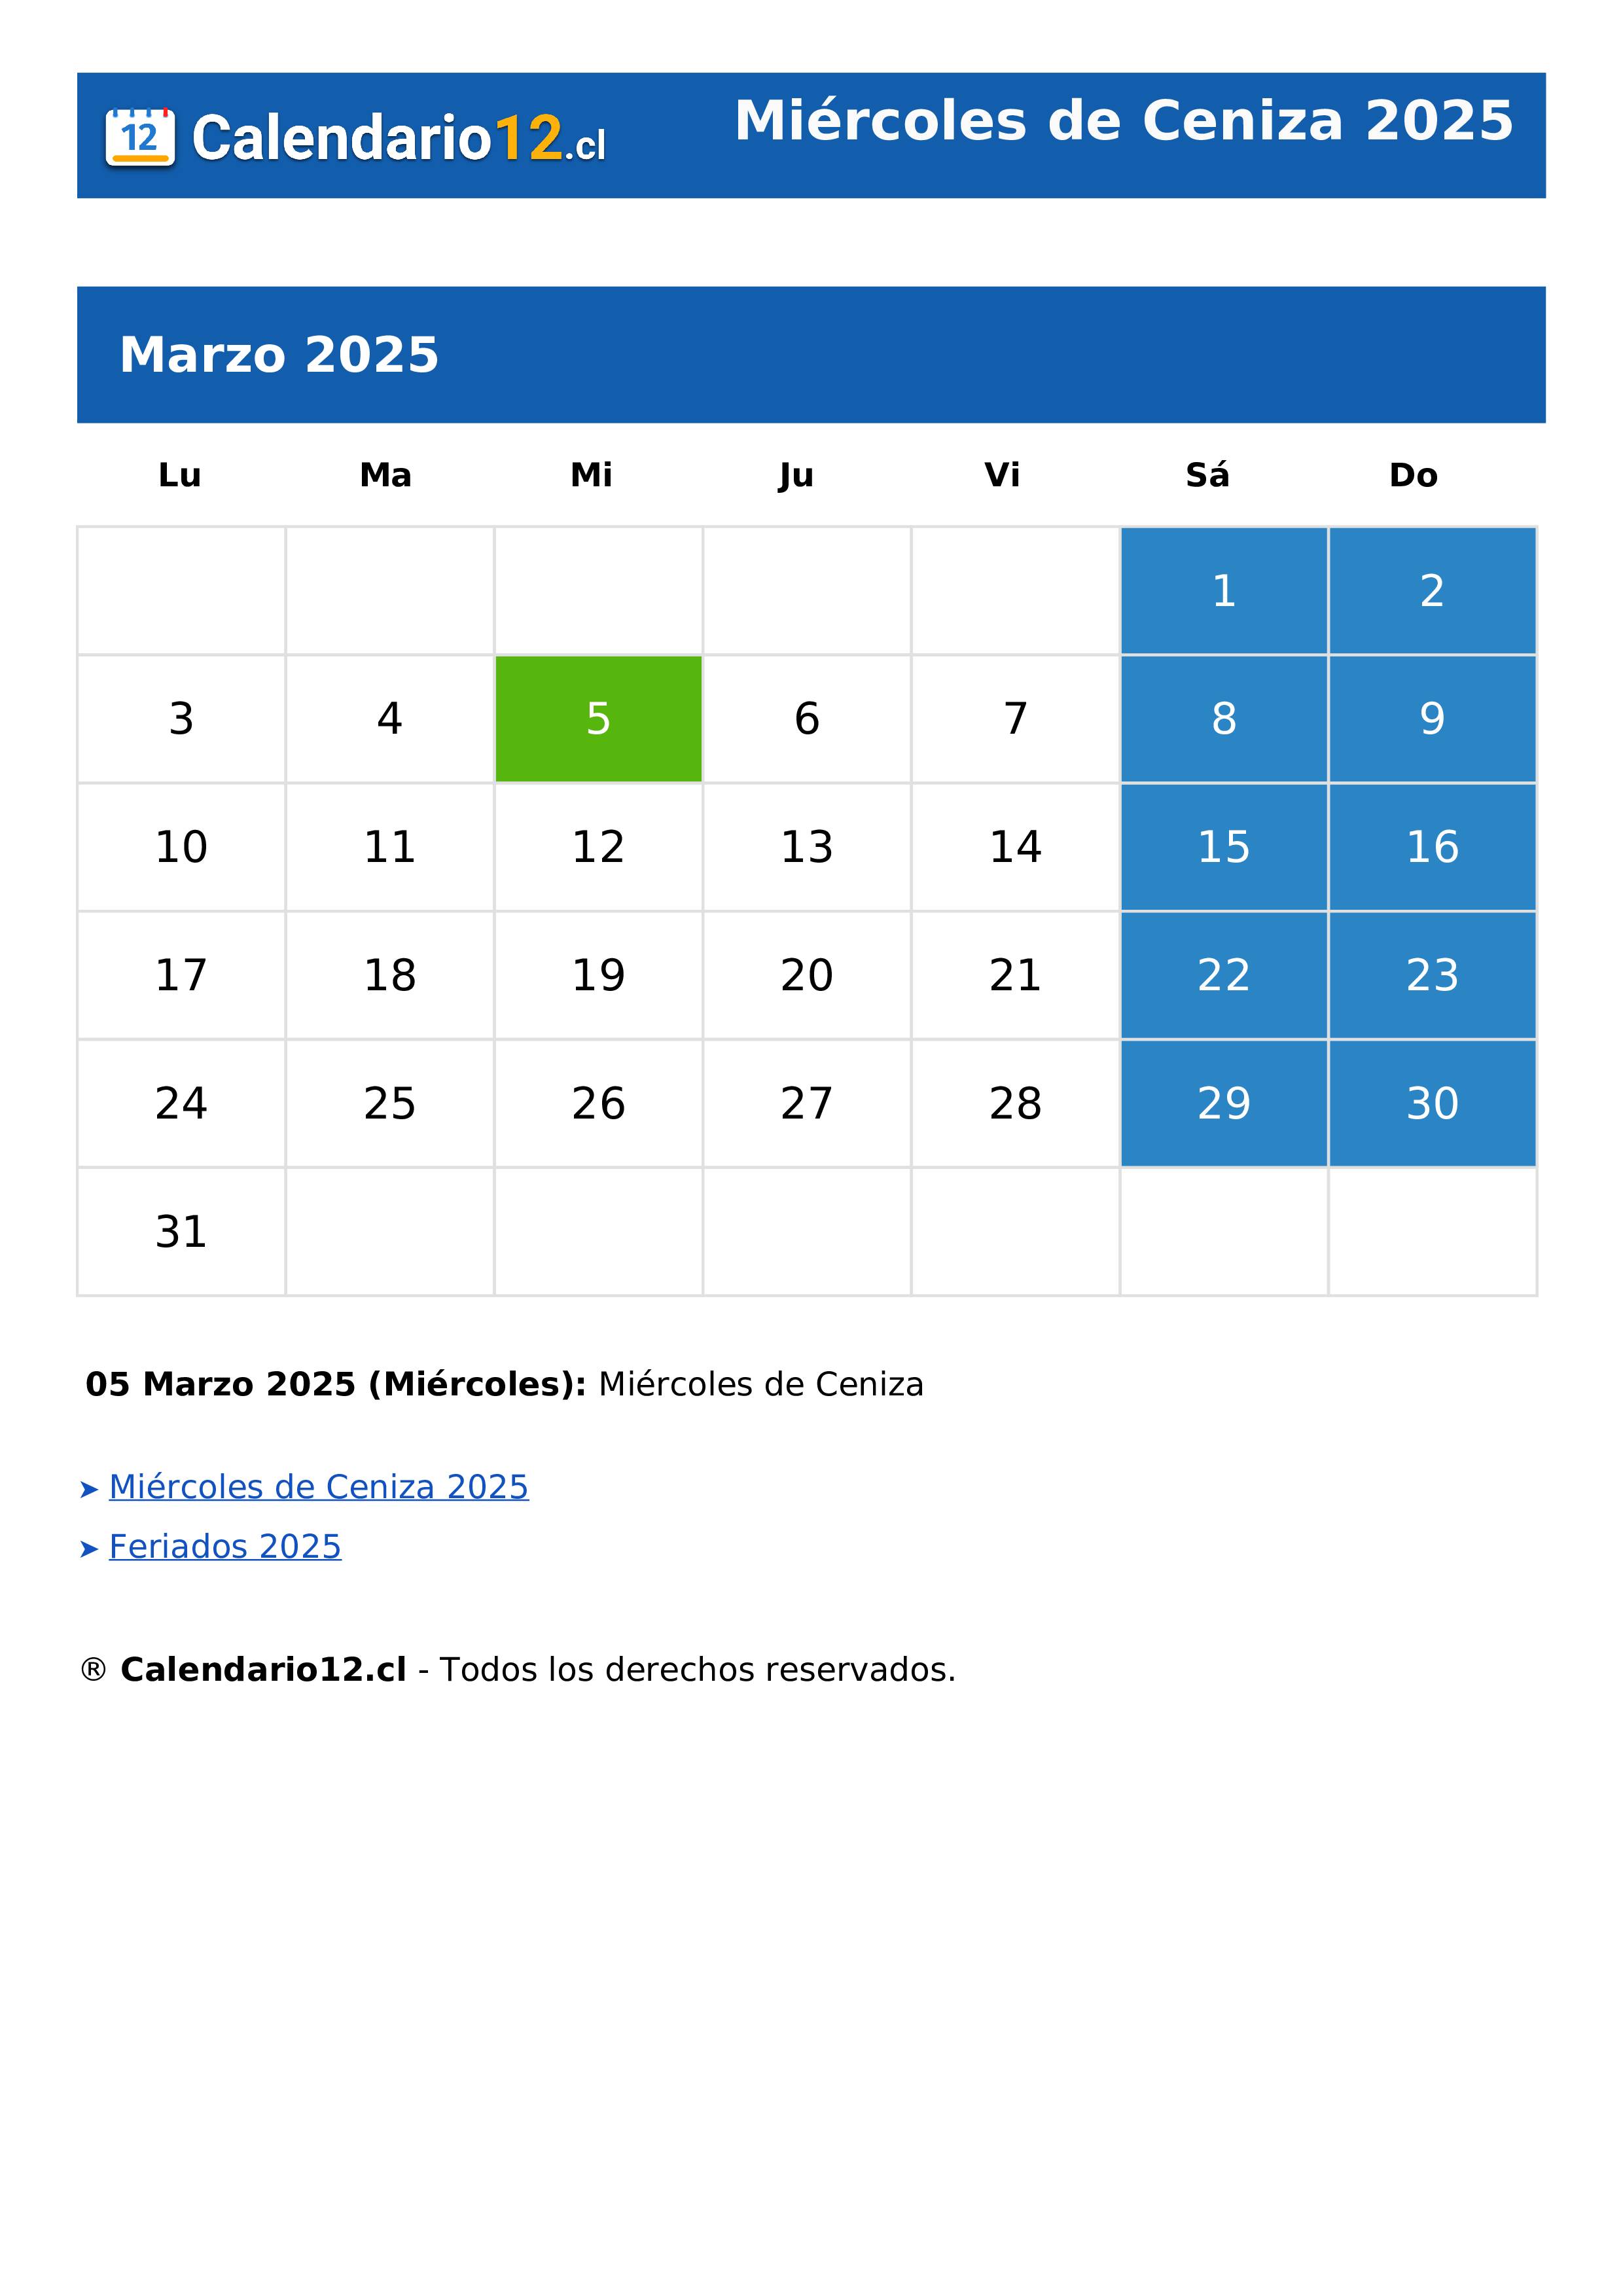 Miércoles de Ceniza 2025